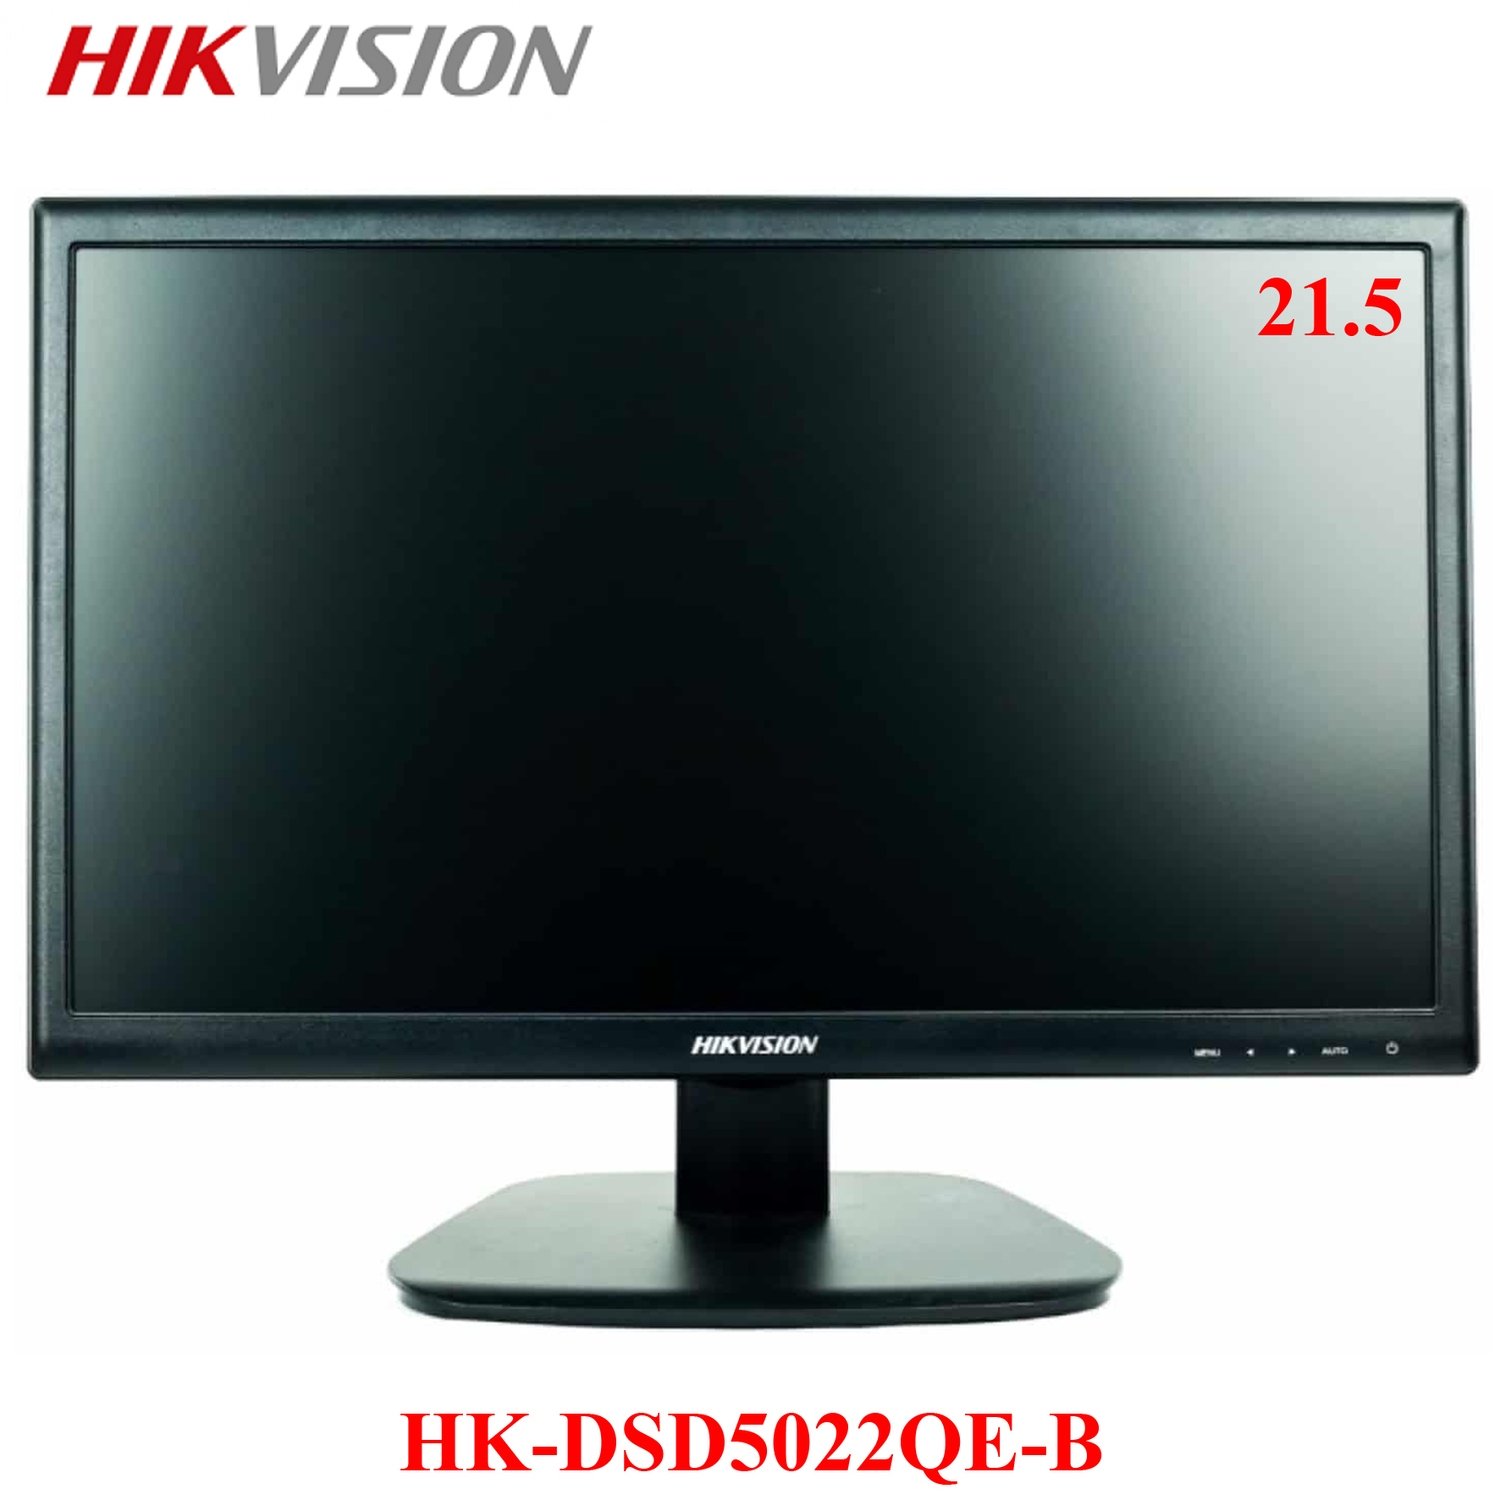 MONITOR HIKVISION 21.5" ULTRADELGADO | HDMI - VGA